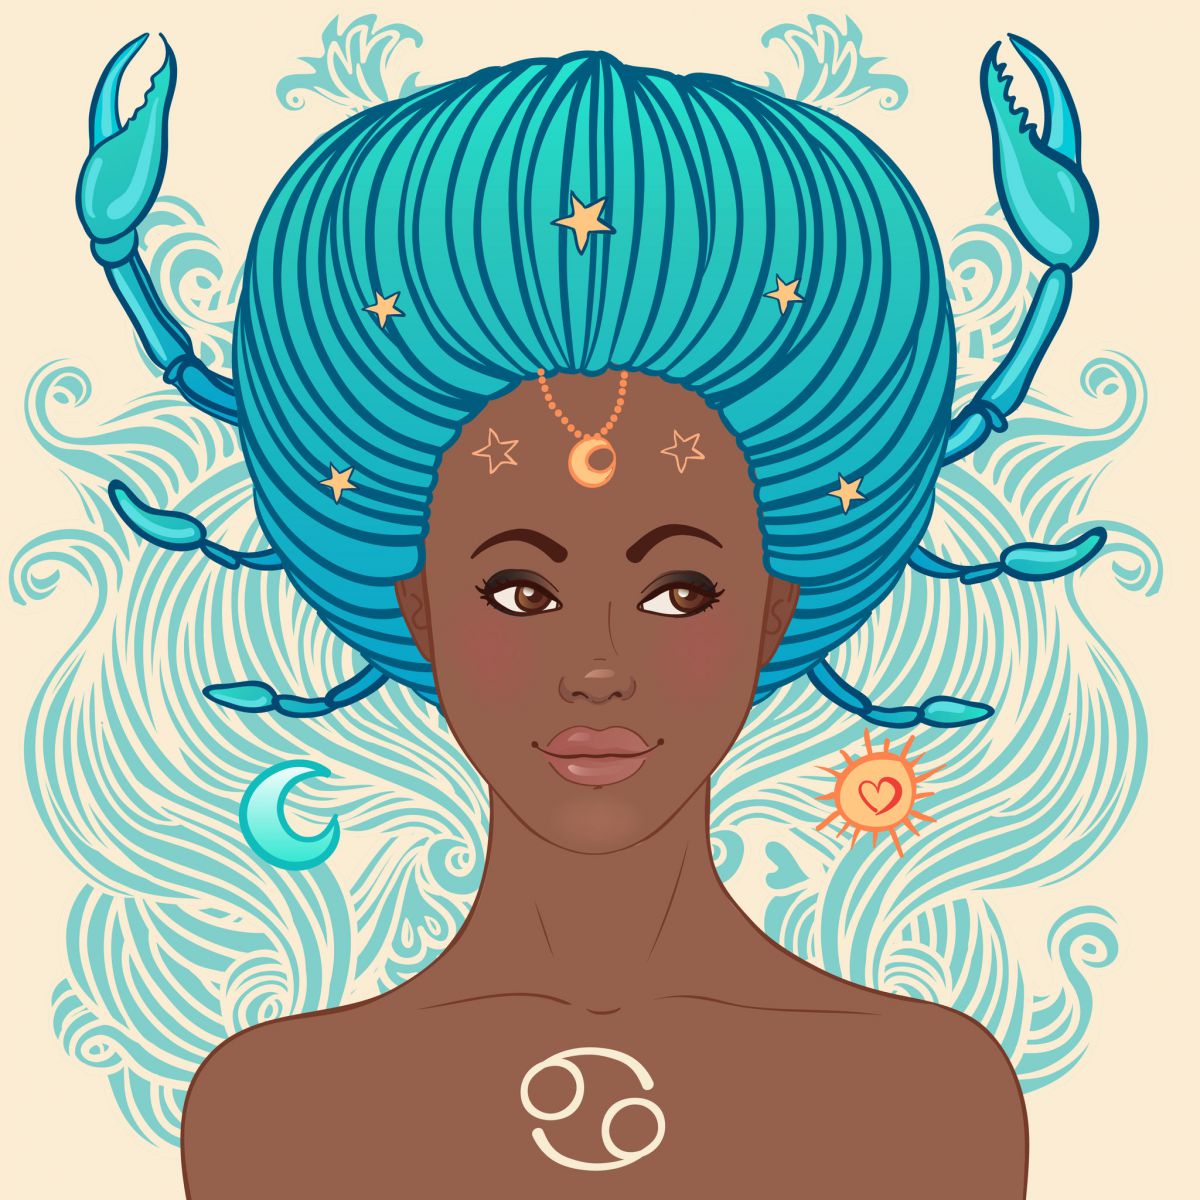 Desenho de mulher com o símbolo do signo de câncer em seu peito, seu cabelo é azul e está com um formato oval amarrado para dentro em um coque. De seu cabelo, estão saindo patas de carangueijo.